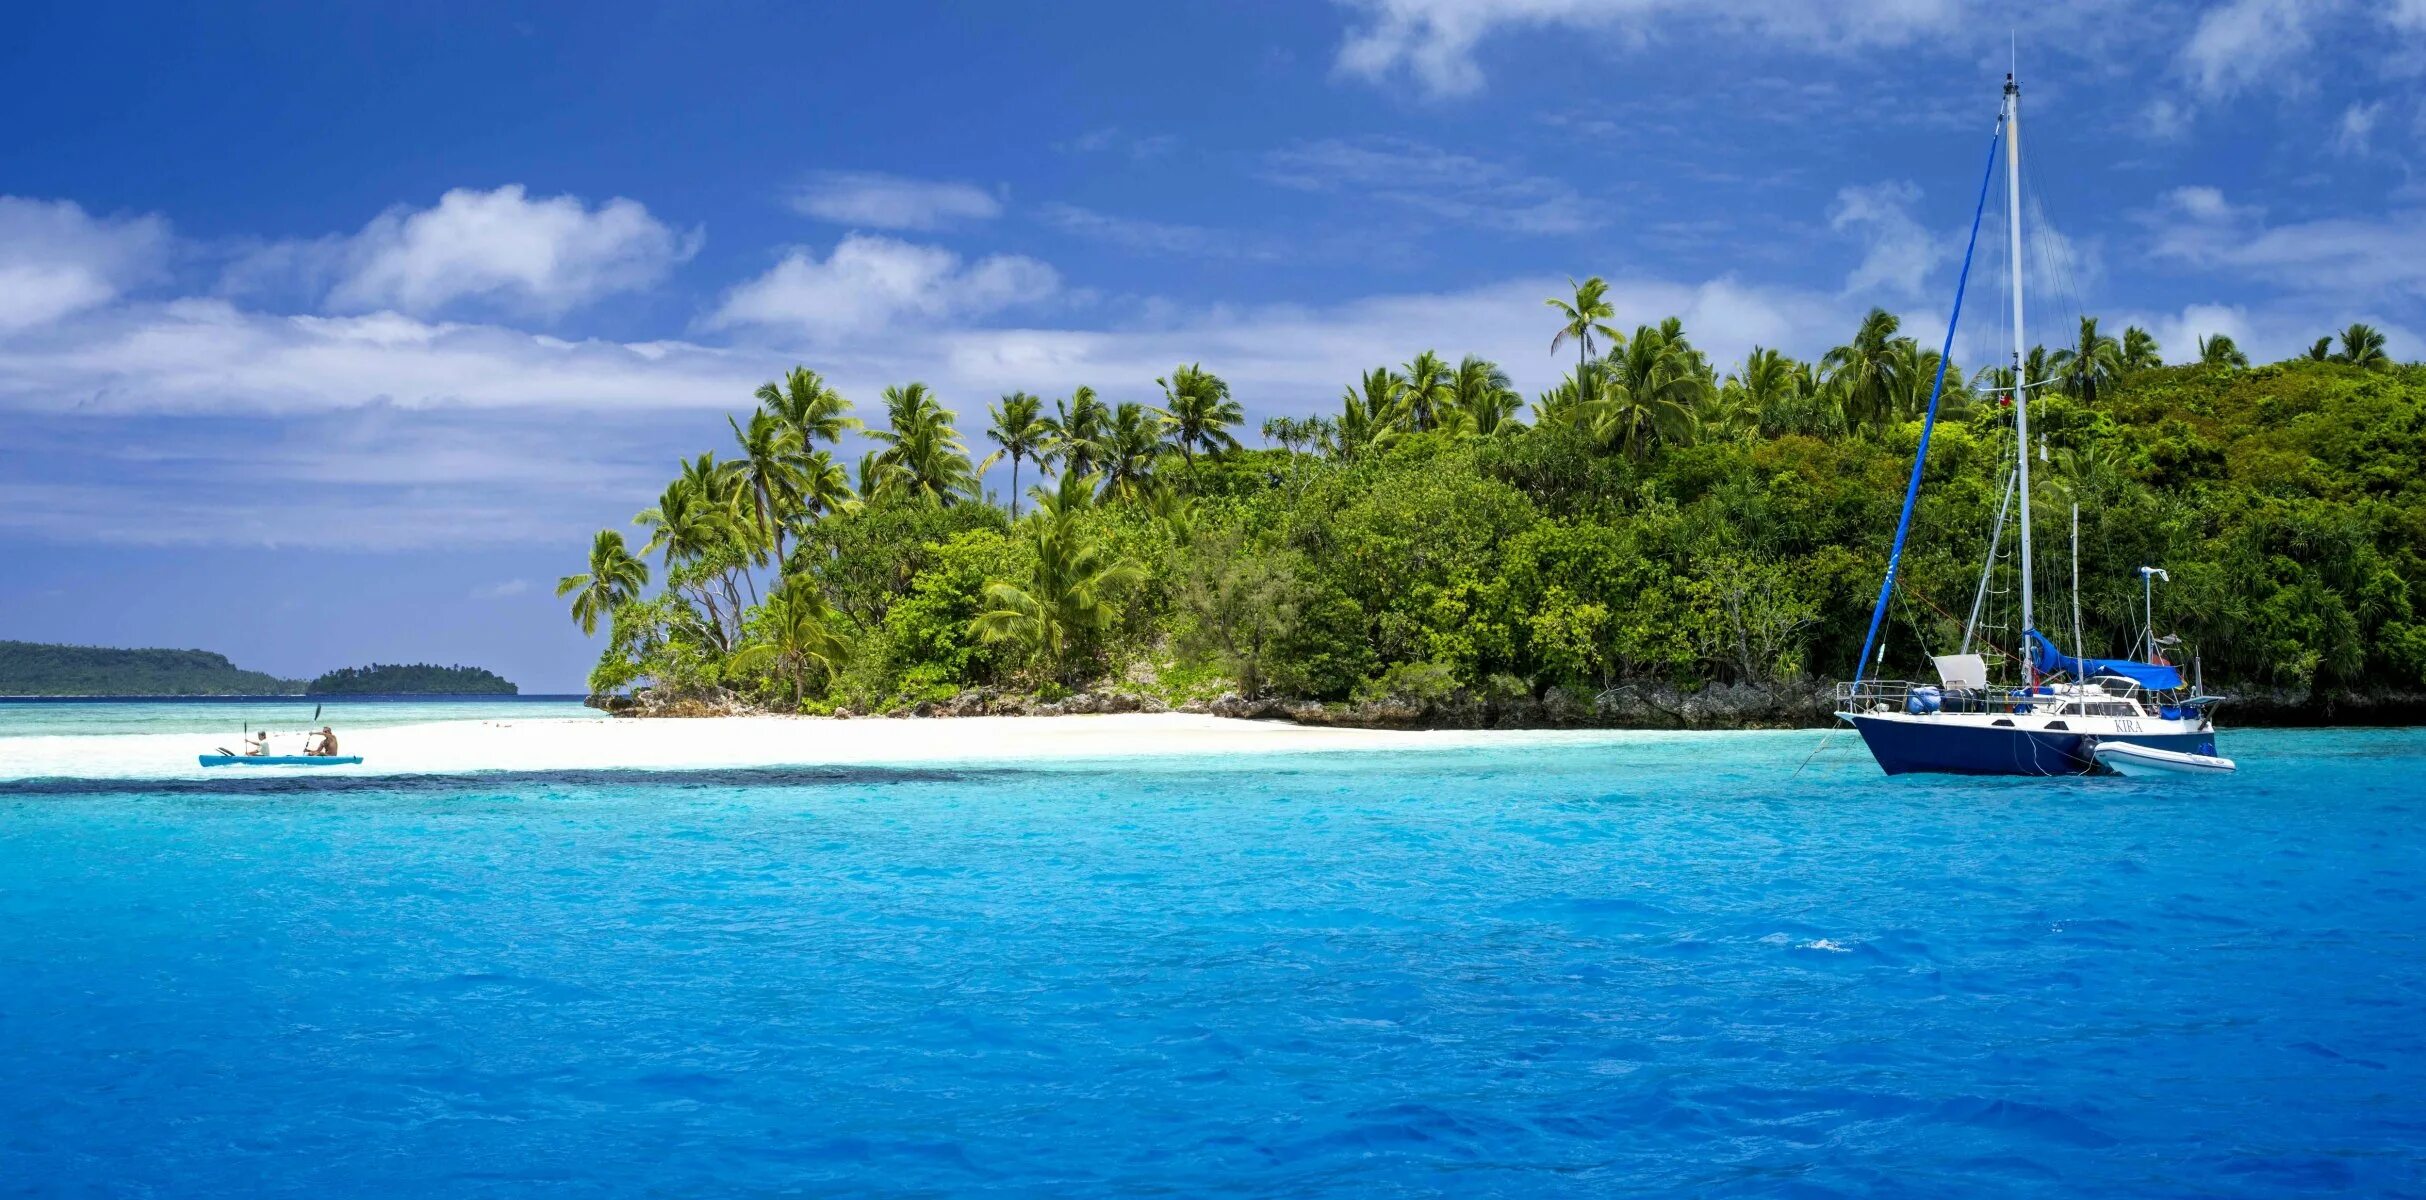 Boat island. Яхта Тропикал Исланд Парадиз. Канары, Карибы, Мальдивы, Сейшелы.. Лагуна Маврикий. Море остров яхта.